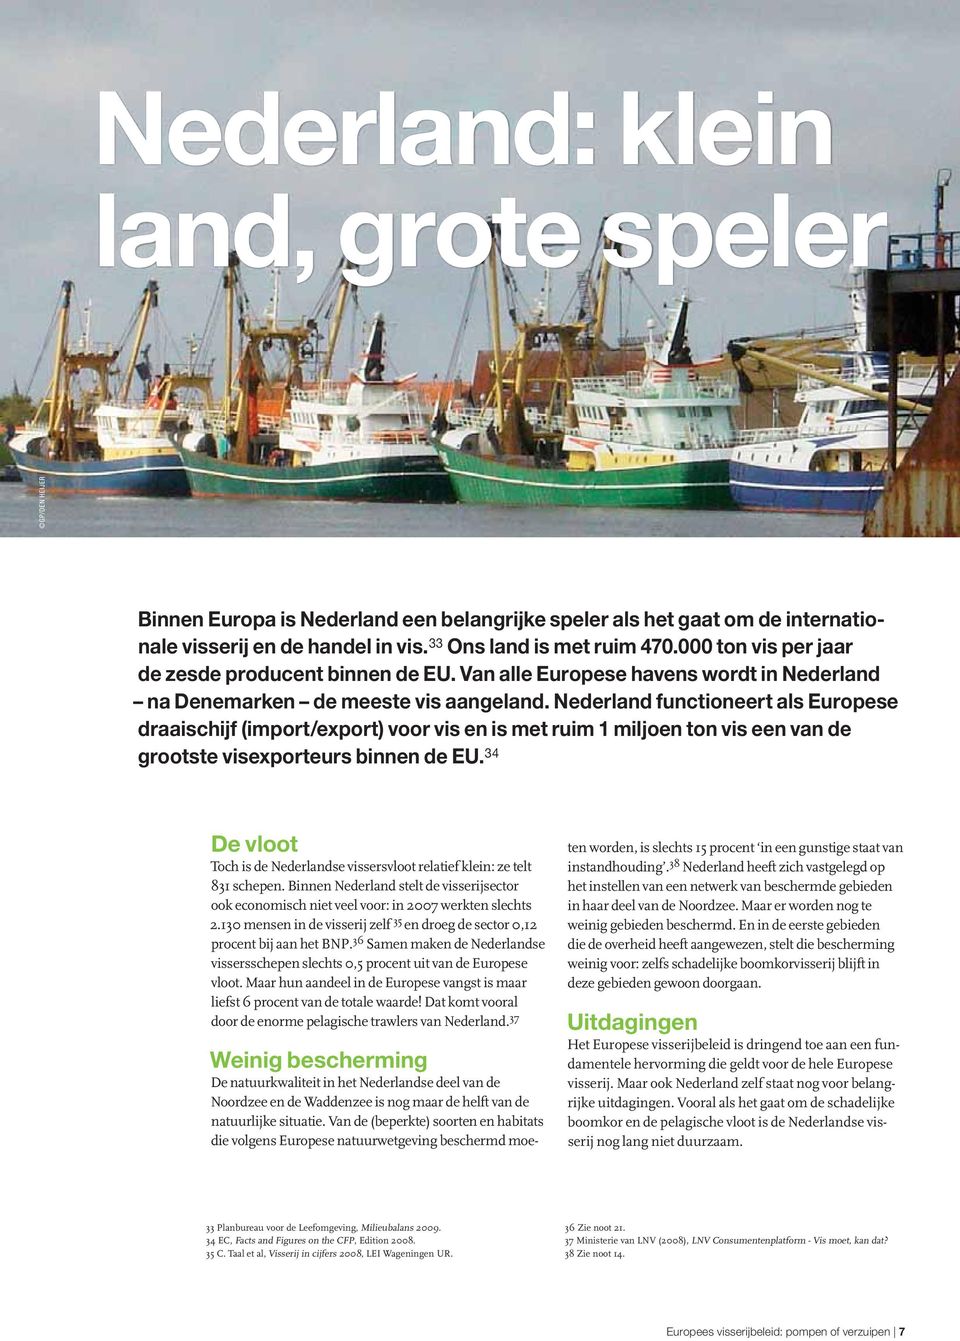 Nederland functioneert als Europese draaischijf (import/export) voor vis en is met ruim 1 miljoen ton vis een van de grootste visexporteurs binnen de EU.